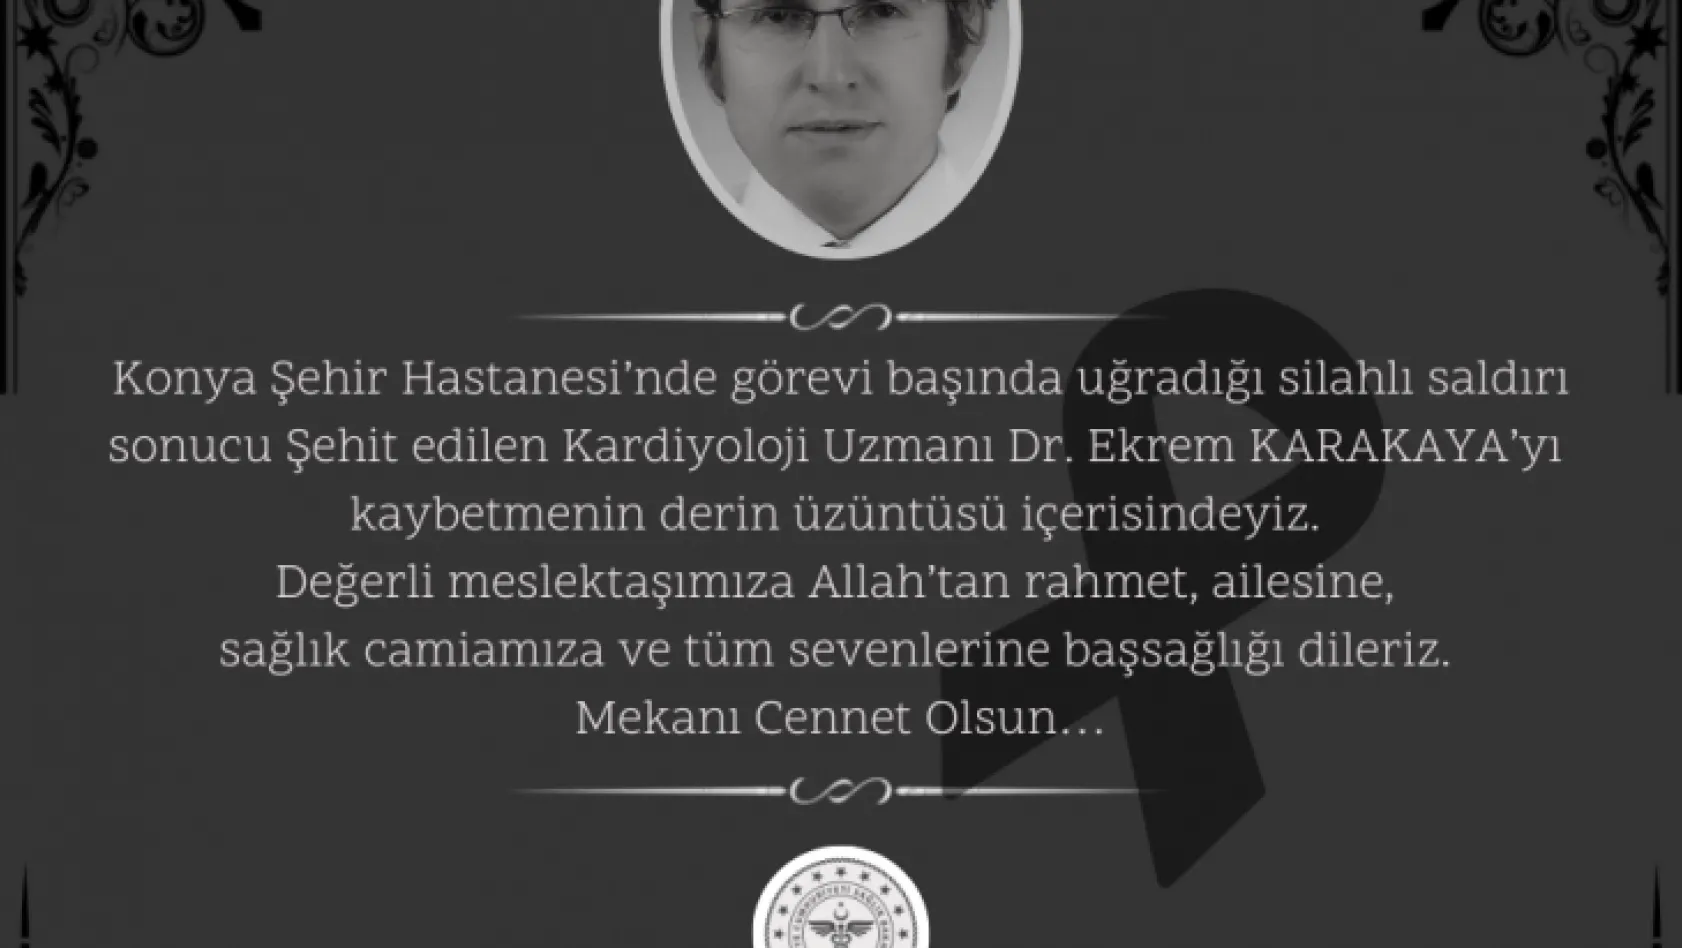 Kayseri Sağlık Müdürü Erşan: Derin üzüntü içerisindeyiz...